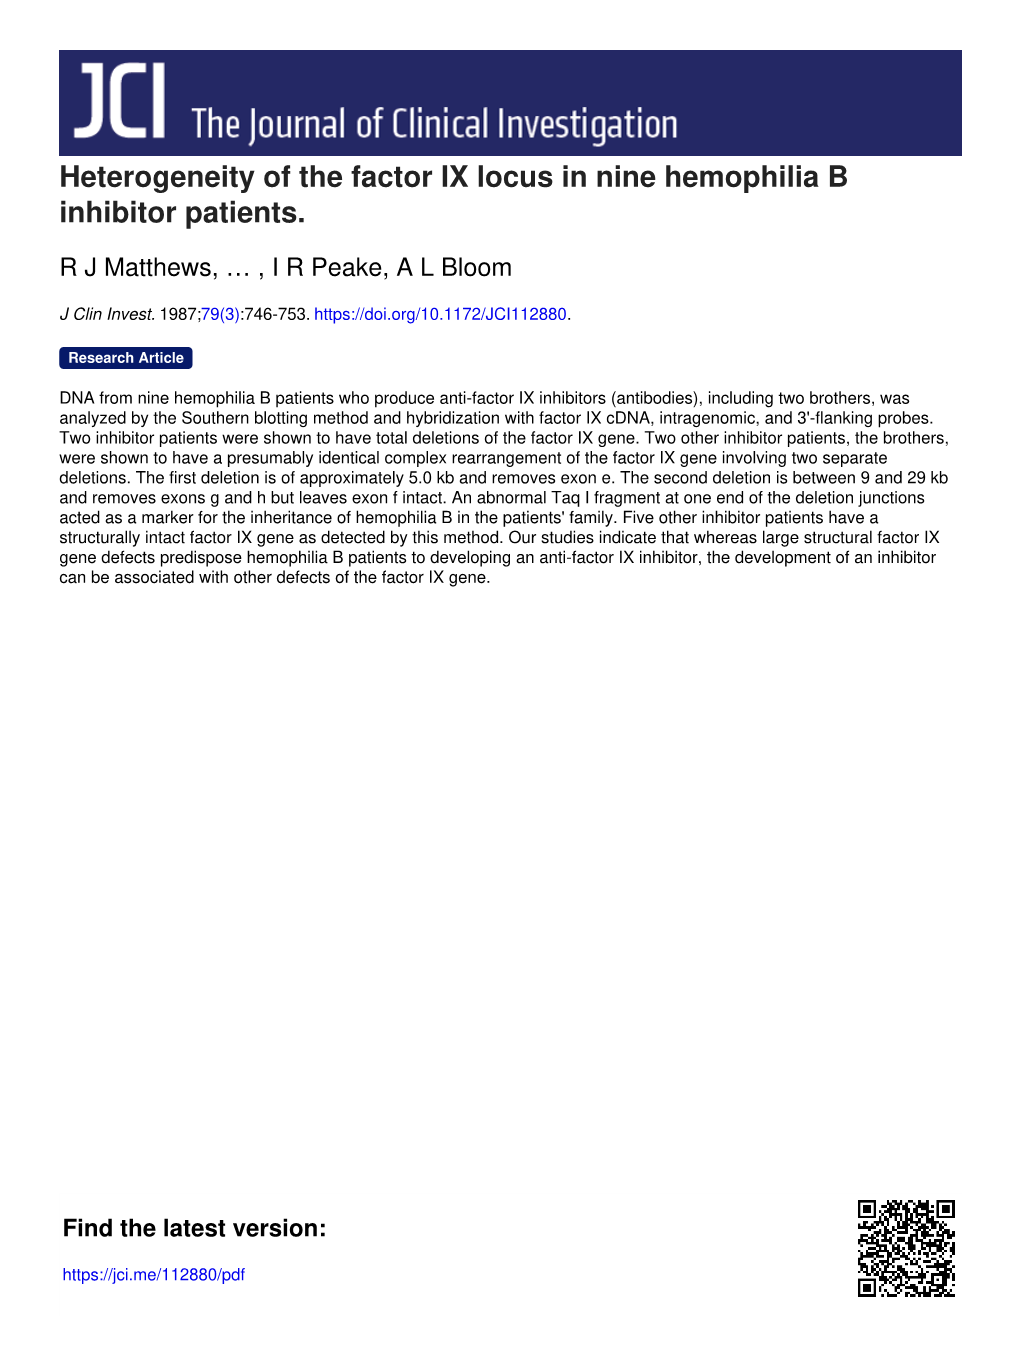 Heterogeneity of the Factor IX Locus in Nine Hemophilia B Inhibitor Patients